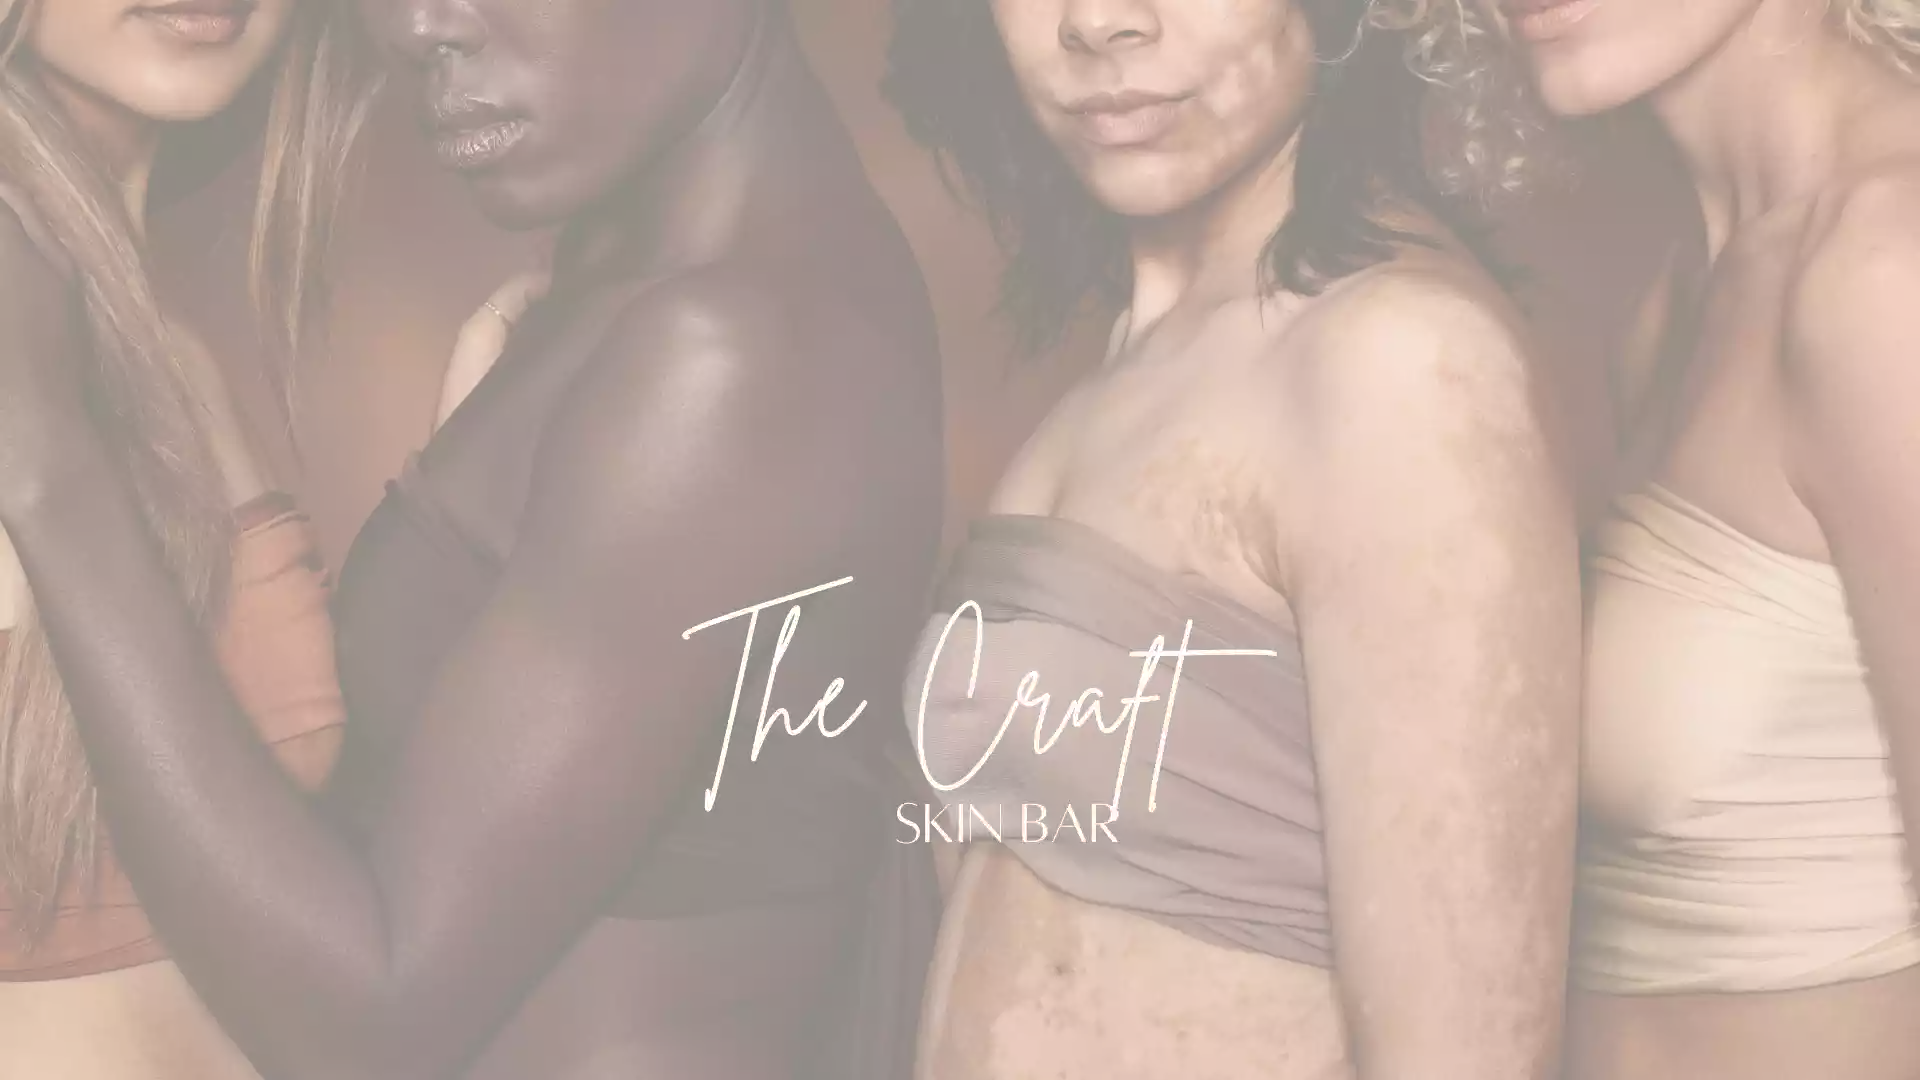 The Craft Skin Bar